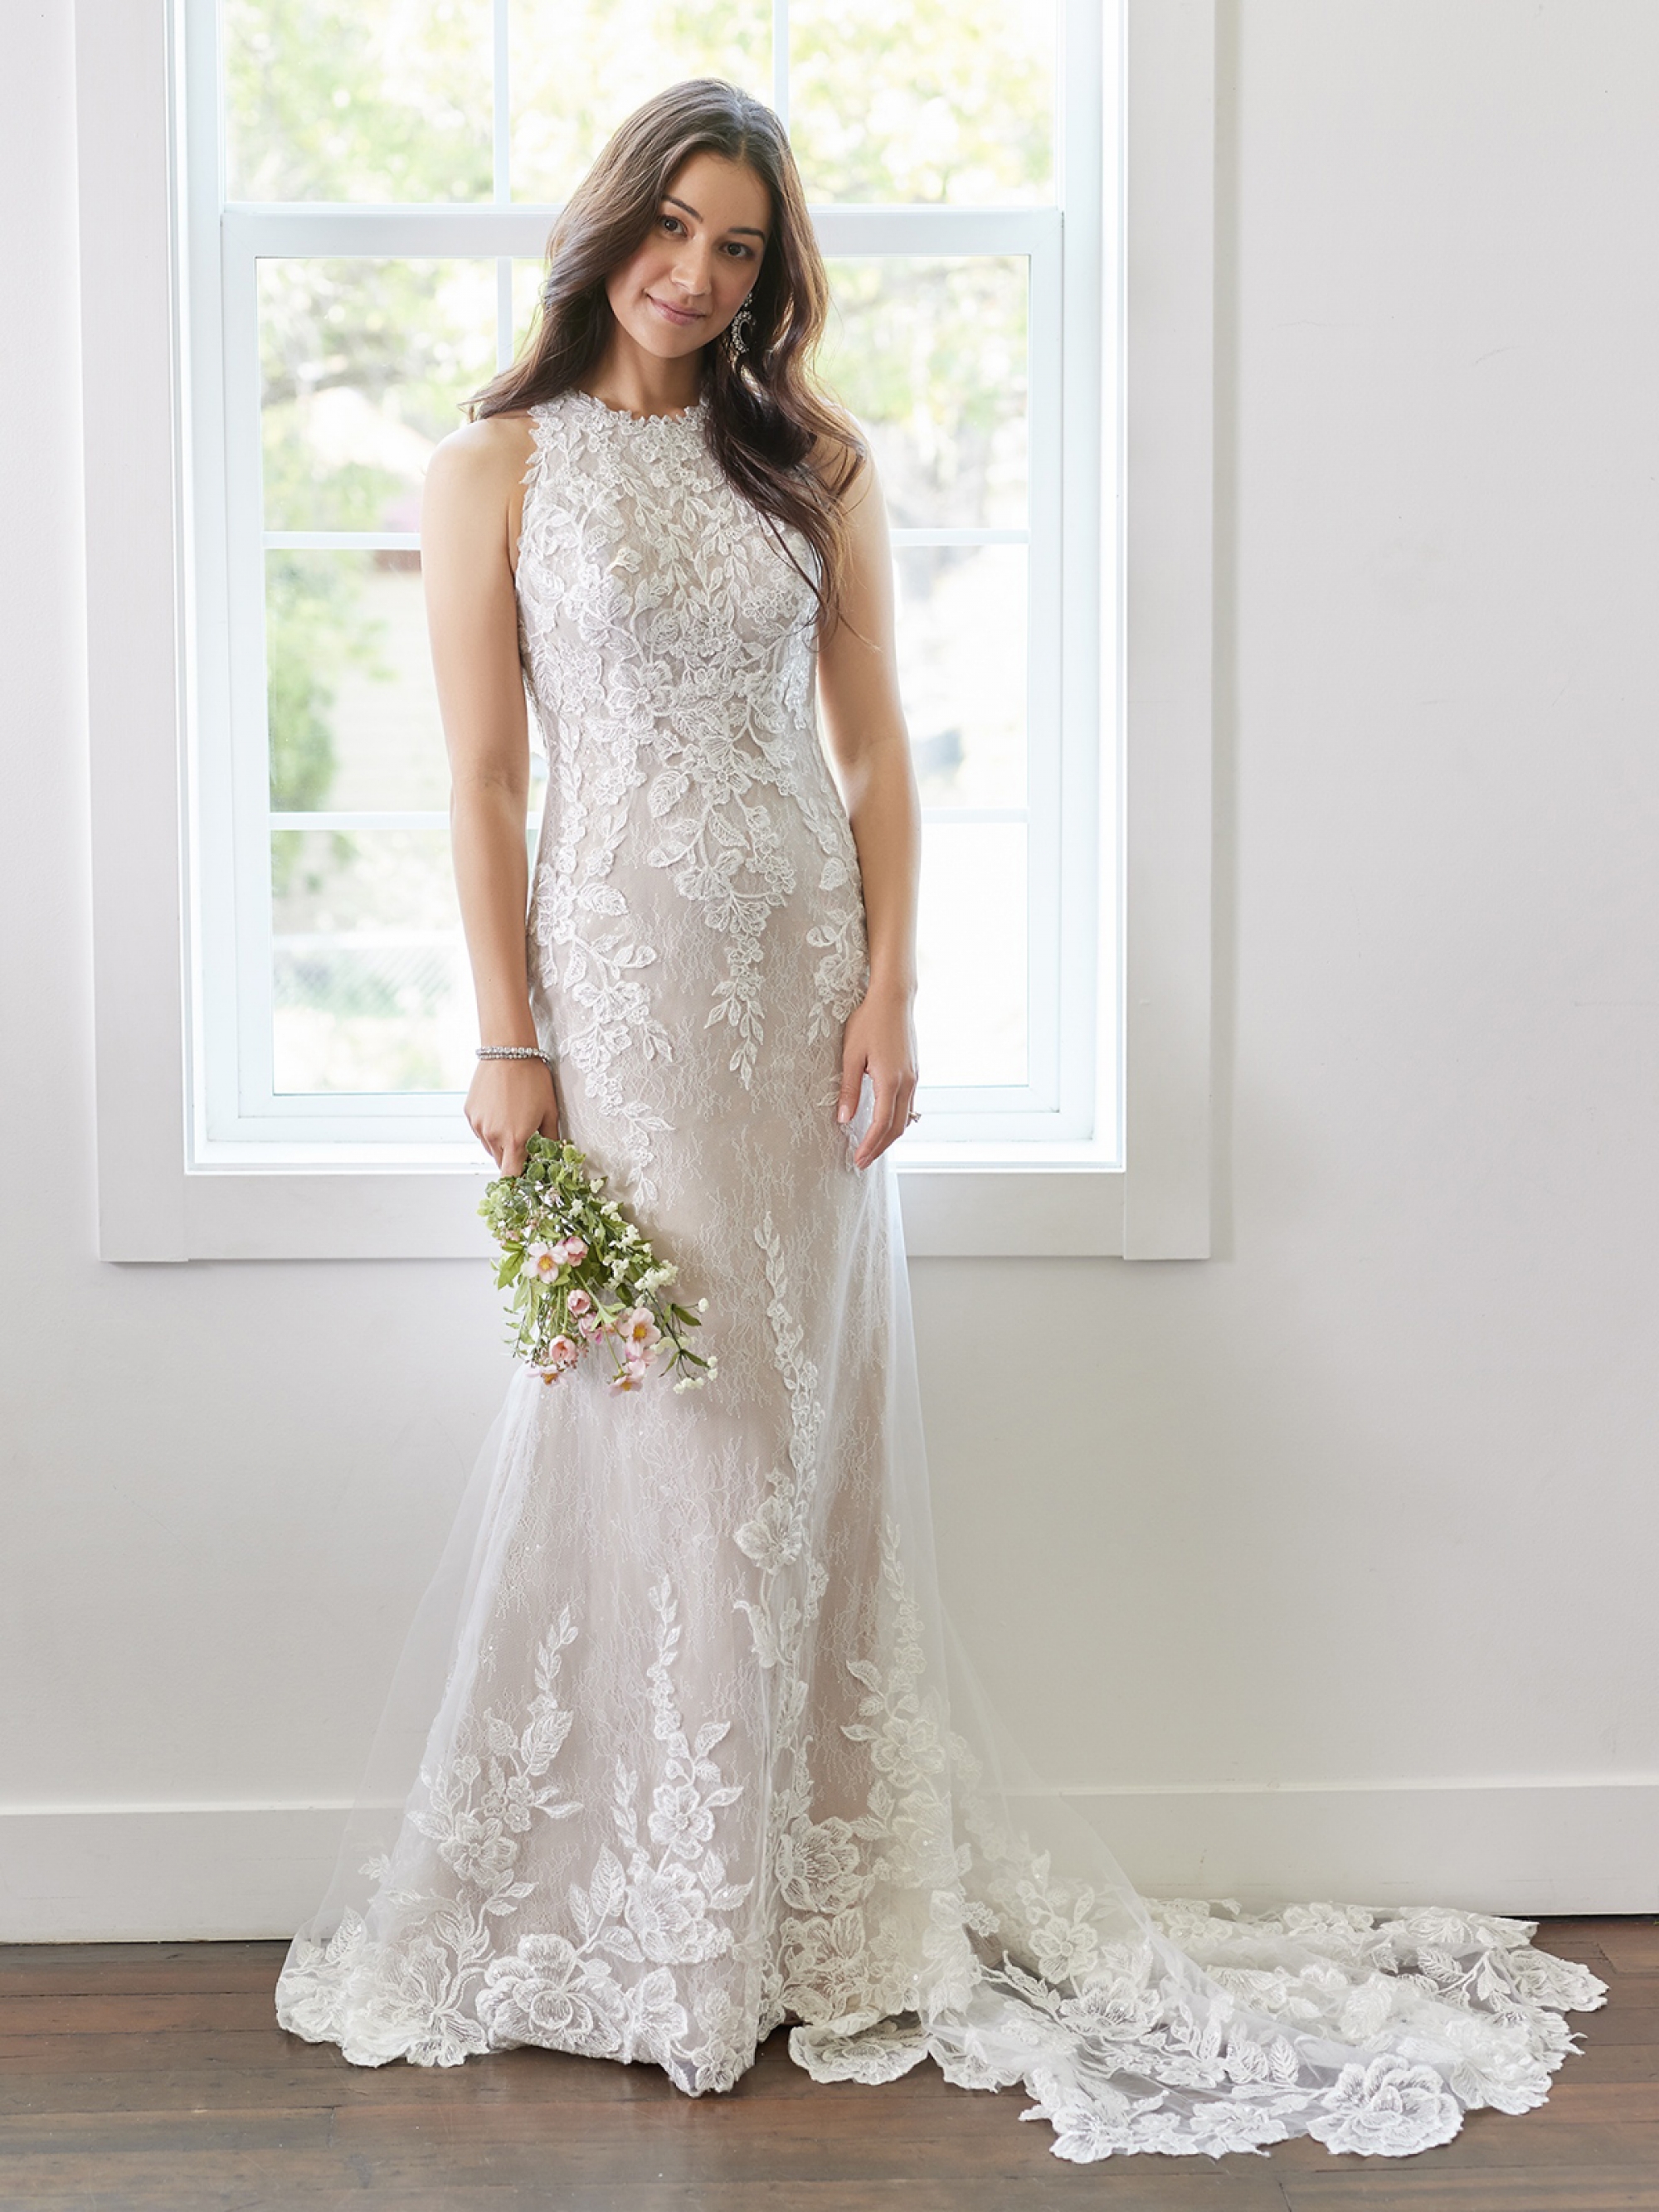 High Rebecca Ingram Hazel Lynette Sheath Wedding Gown 22RC522B01 Alt1 BLS